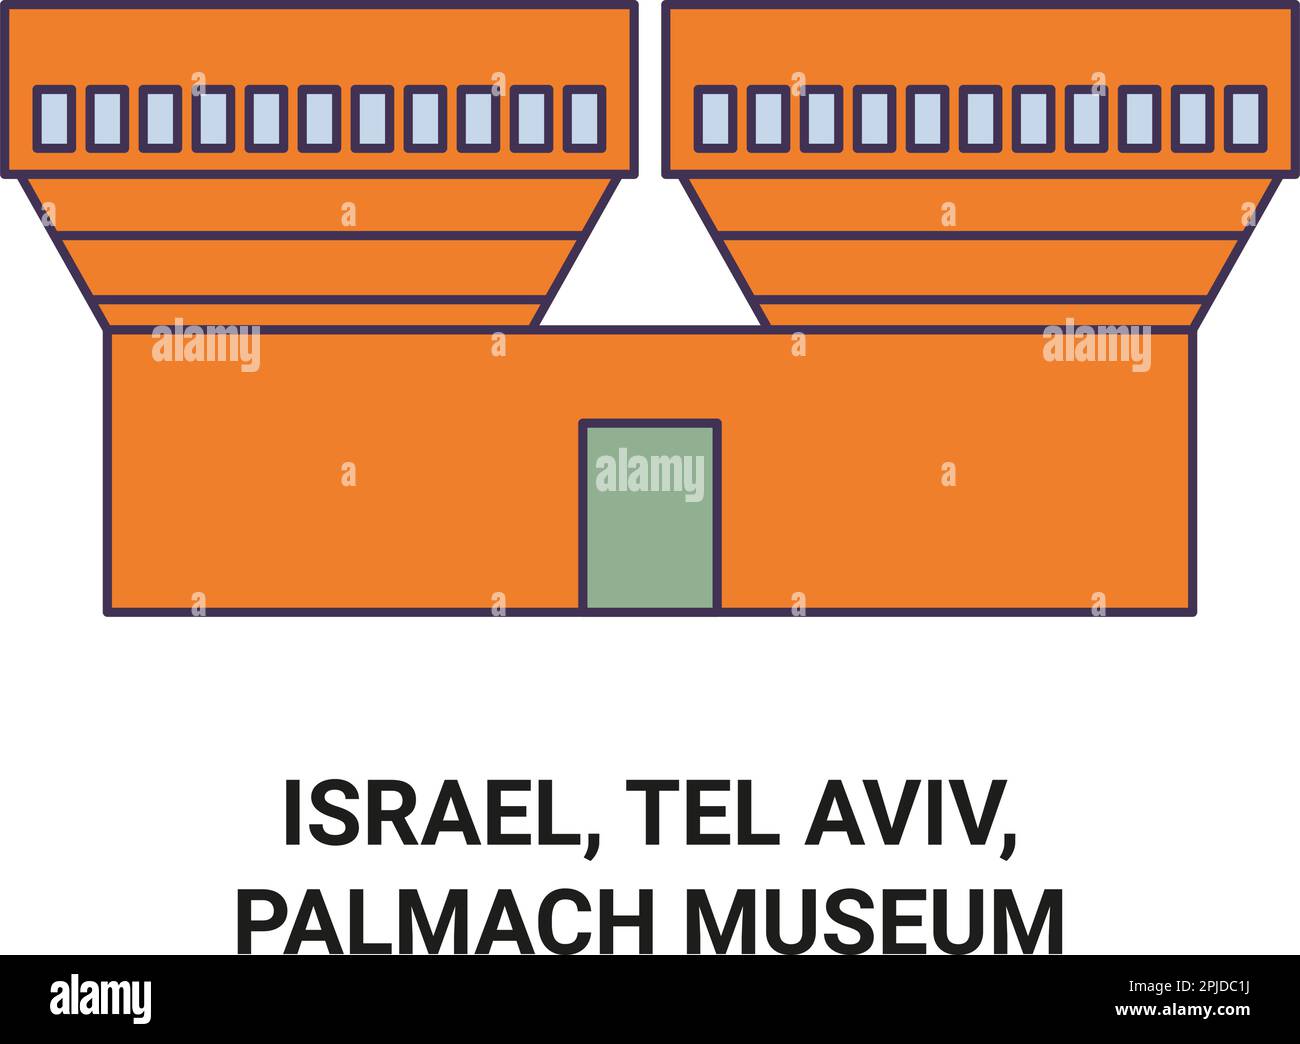 Israel, Tel Aviv, Palmach Museum travel landmark vector illustration Stock Vector